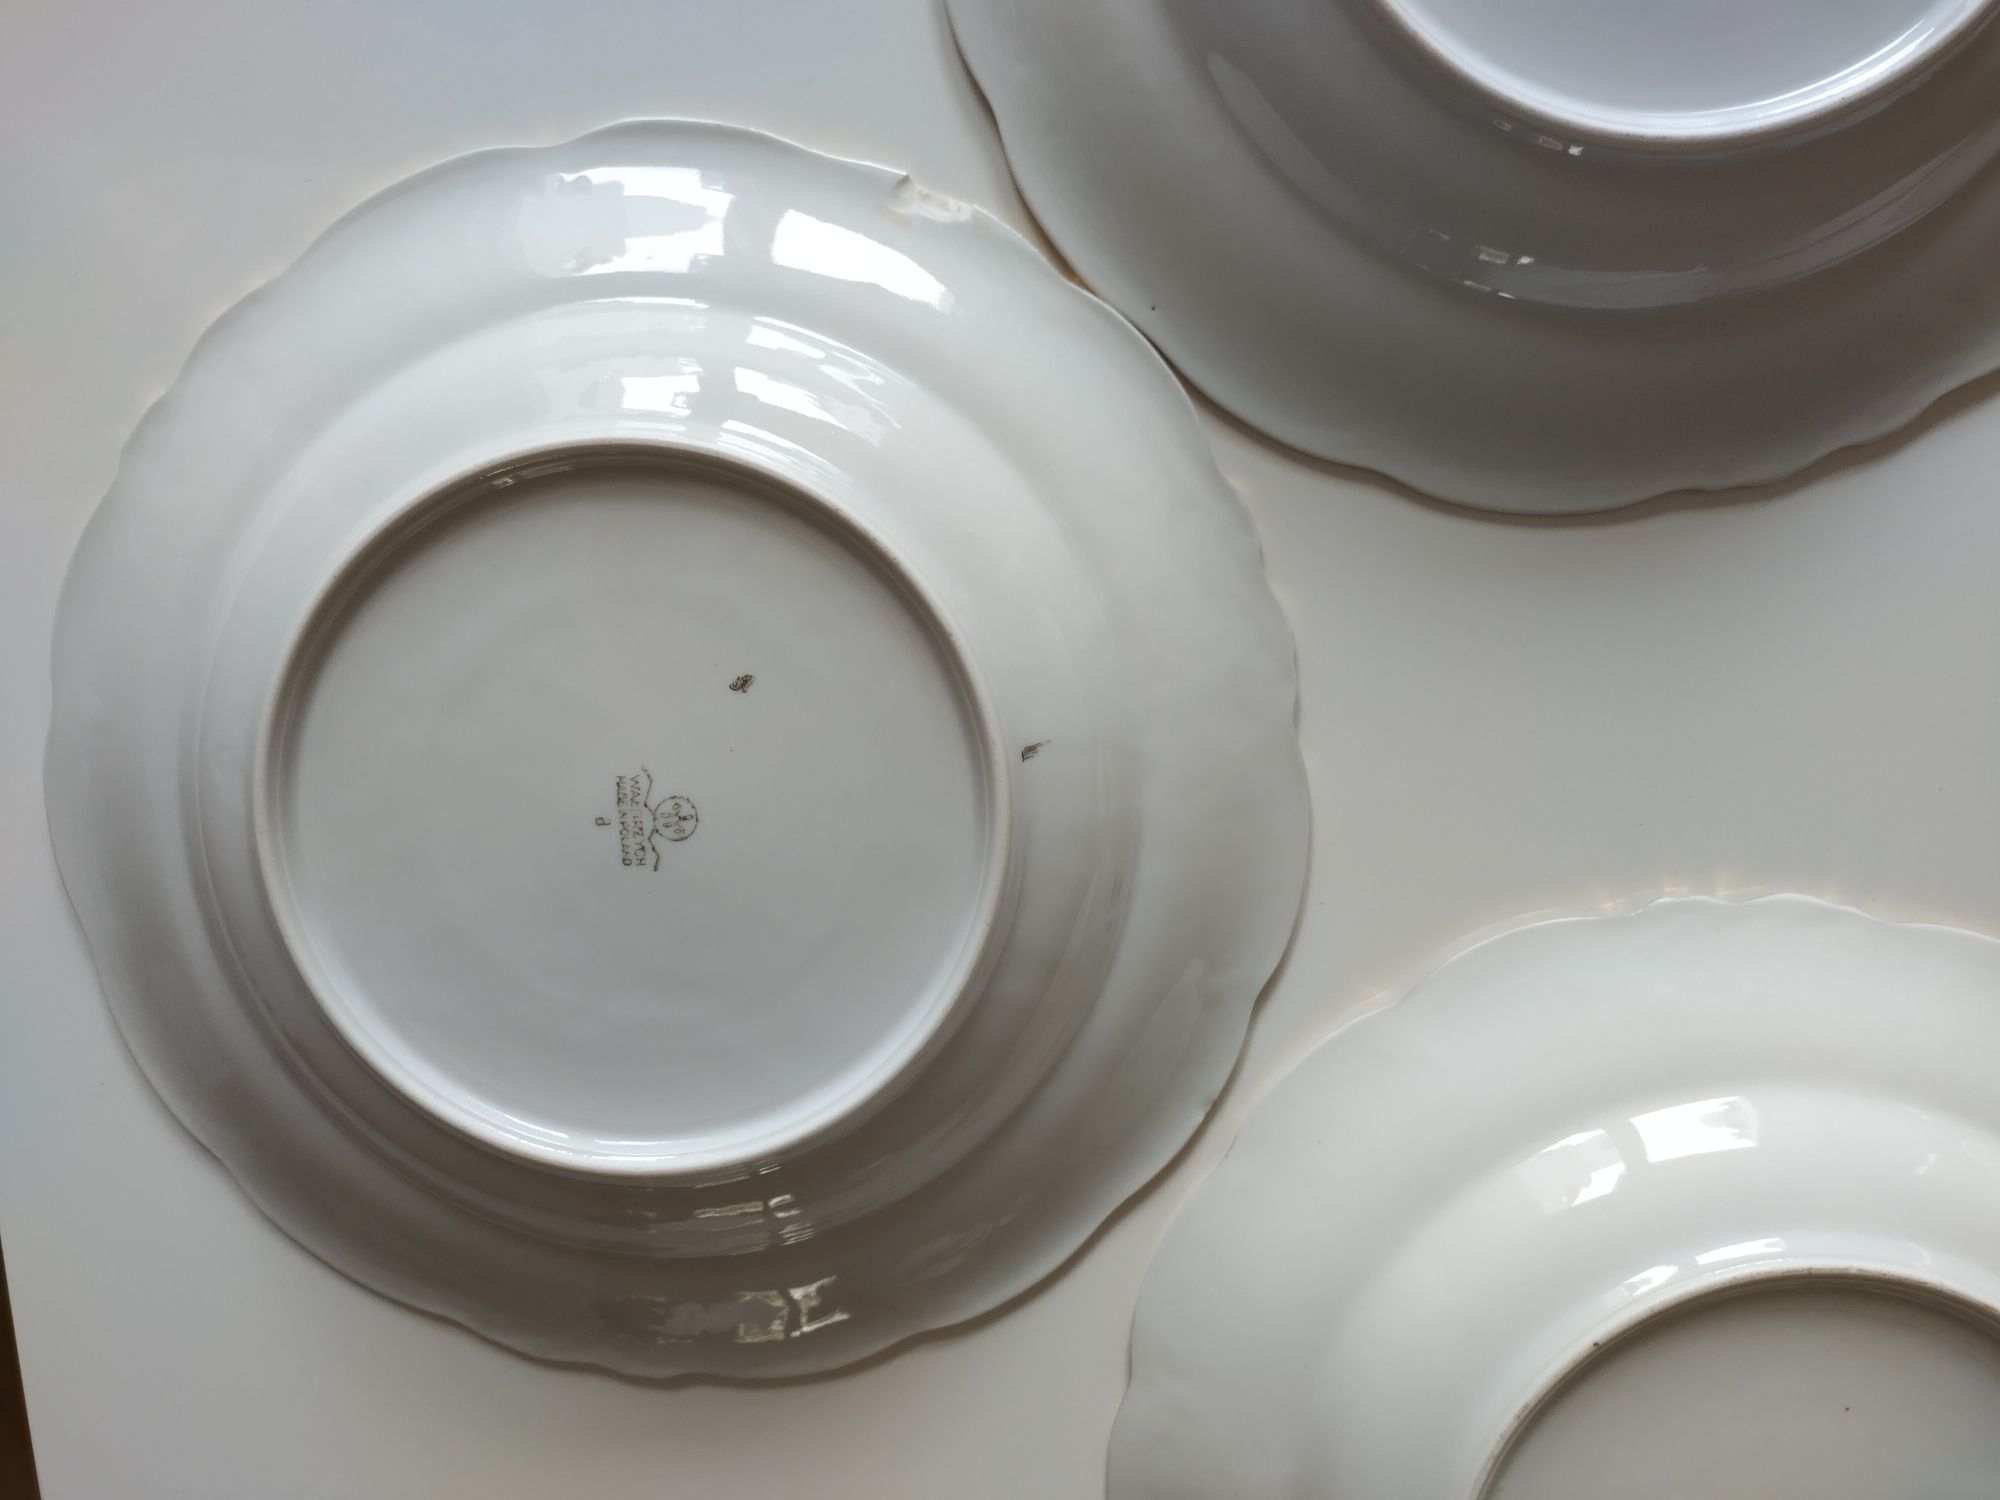 Tłoczona porcelana Wałbrzych głębokie talerze obiadowe 5 sztuk